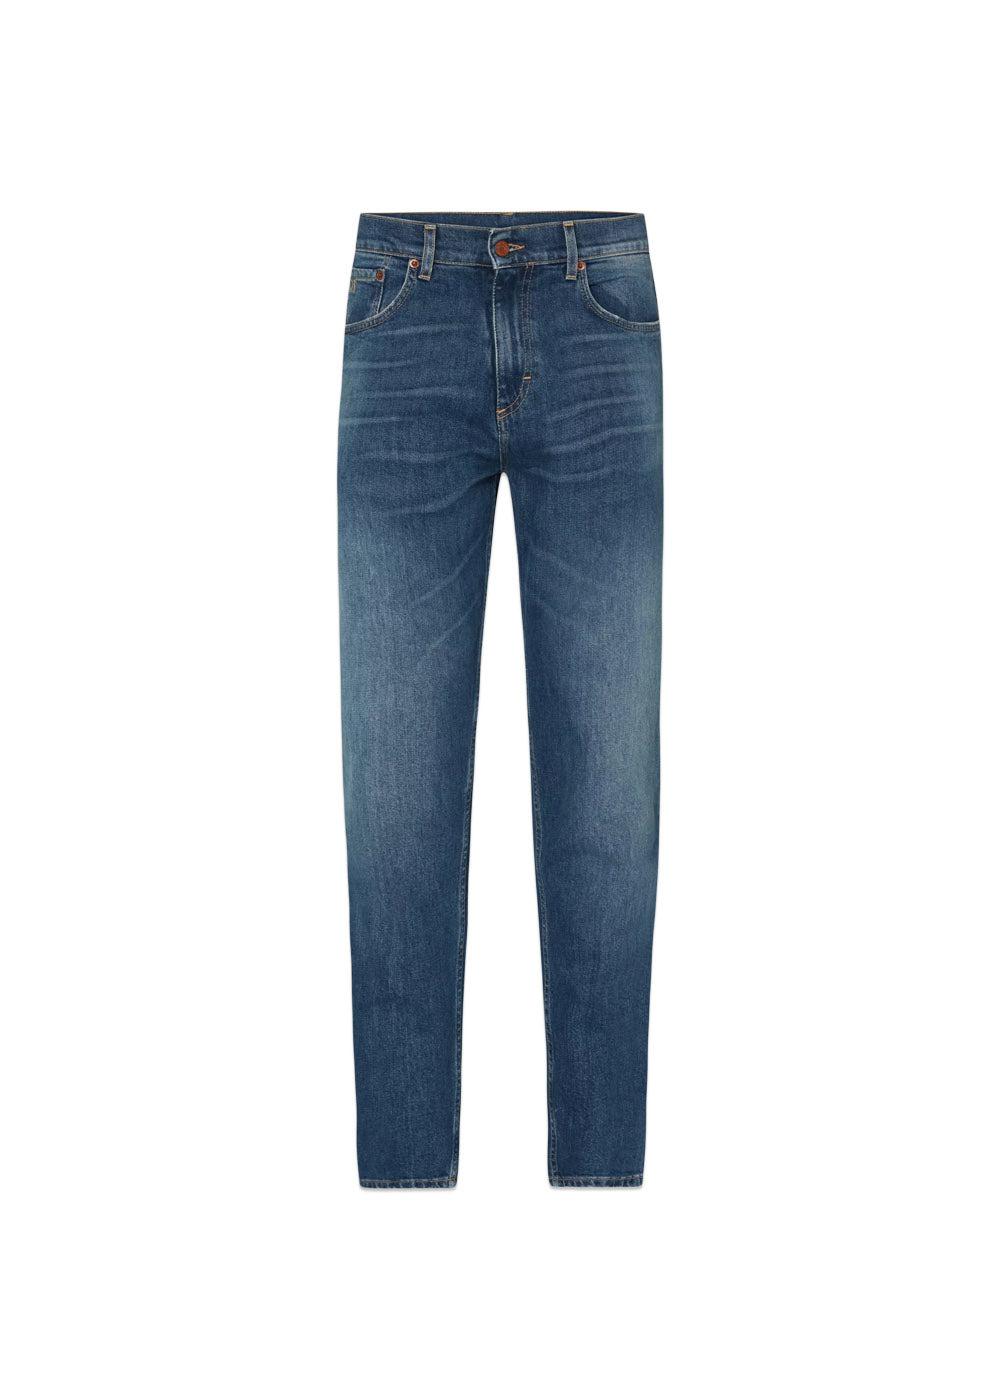 Oscar Jacobsons Karl Trousers - Denim Blue. Køb jeans her.